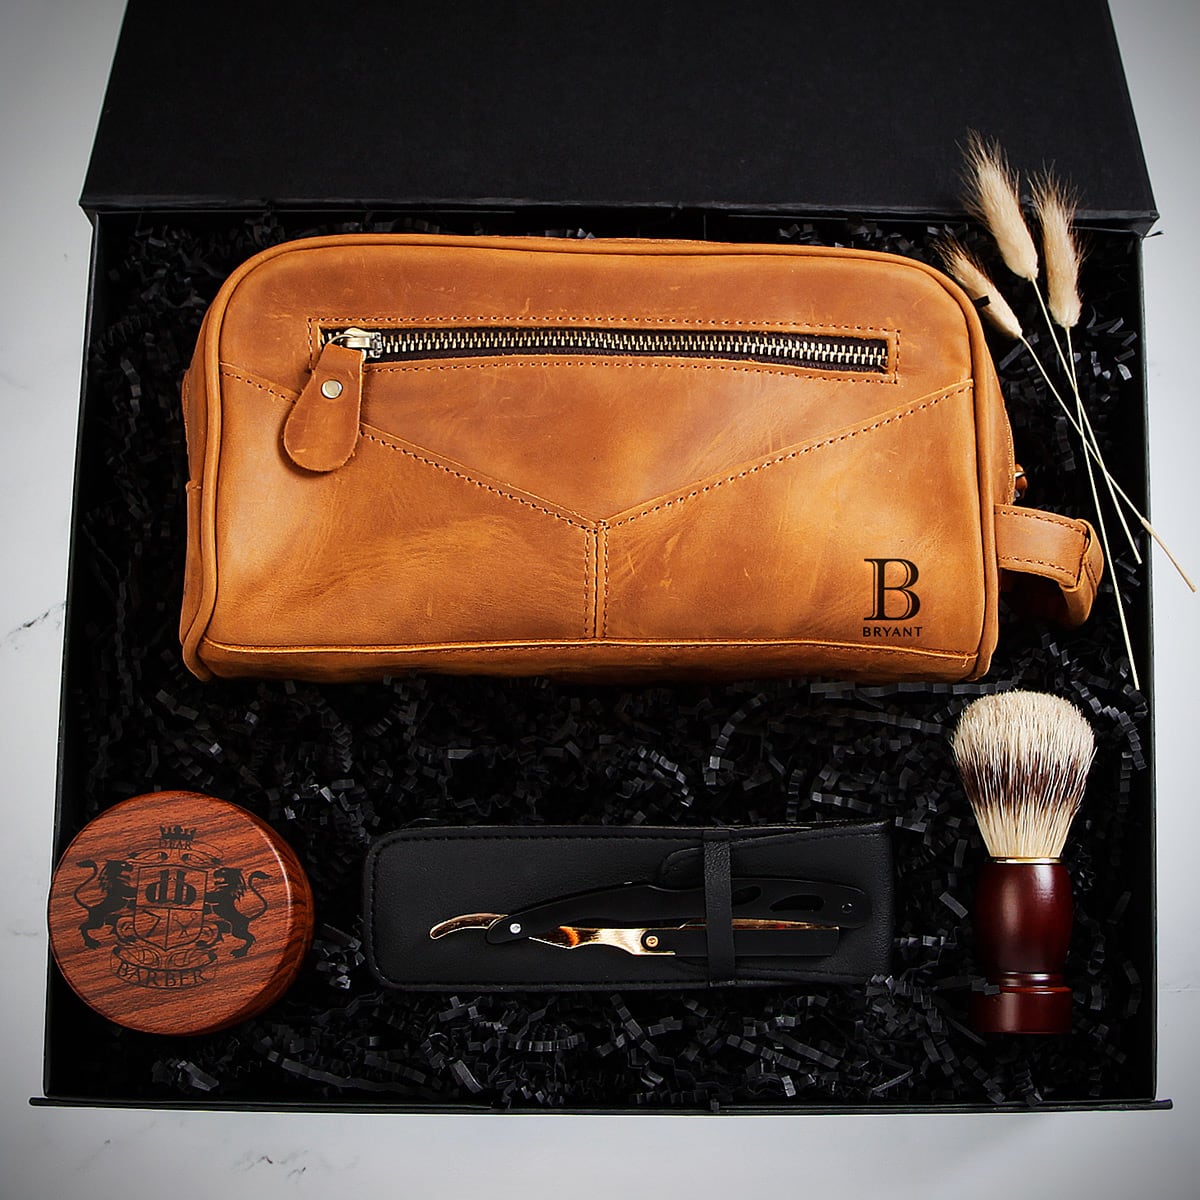 Gentlemen's Shaving Kit with Custom Men's Toiletry Bag